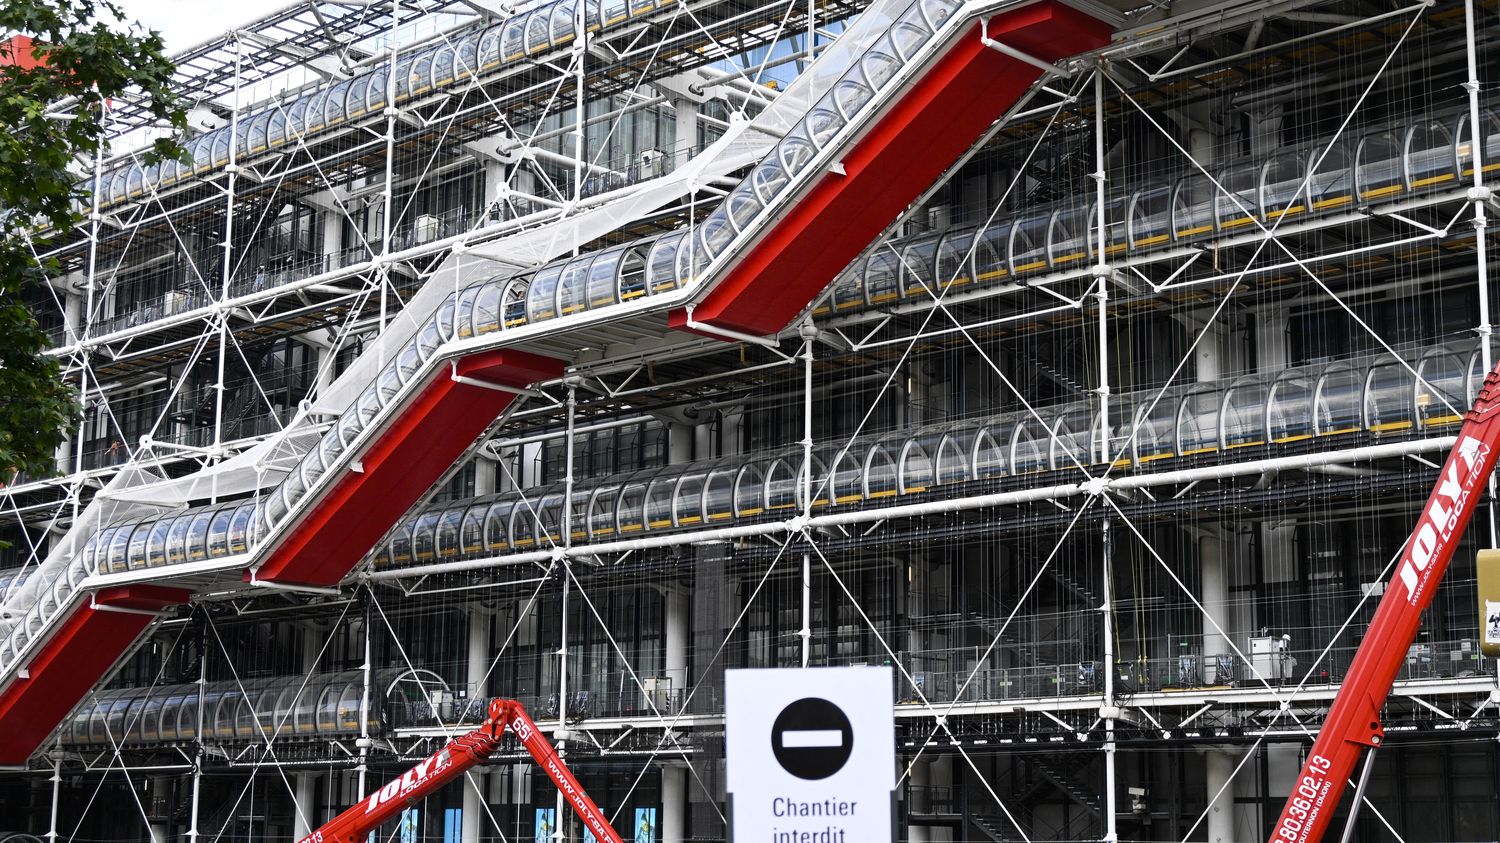 Des œuvres du Centre Pompidou seront exposées dans les galeries à proximité du musée durant les travaux, annonce Rachida Dati